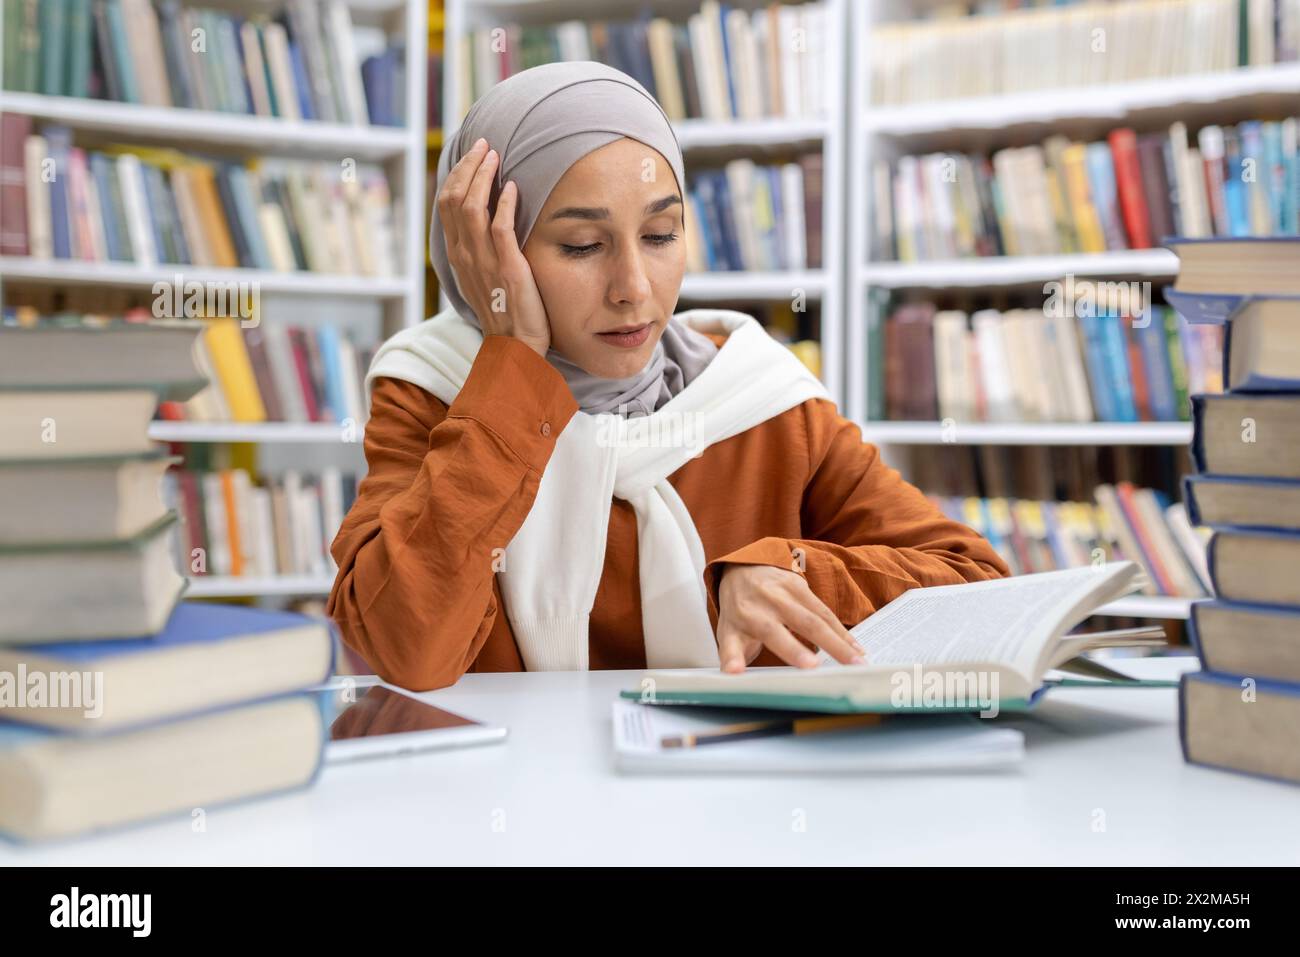 Una donna musulmana premurosa in un hijab immersa nei suoi studi in una biblioteca, circondata da mucchi di libri, che mostra dedizione e ricerca della conoscenza. Foto Stock